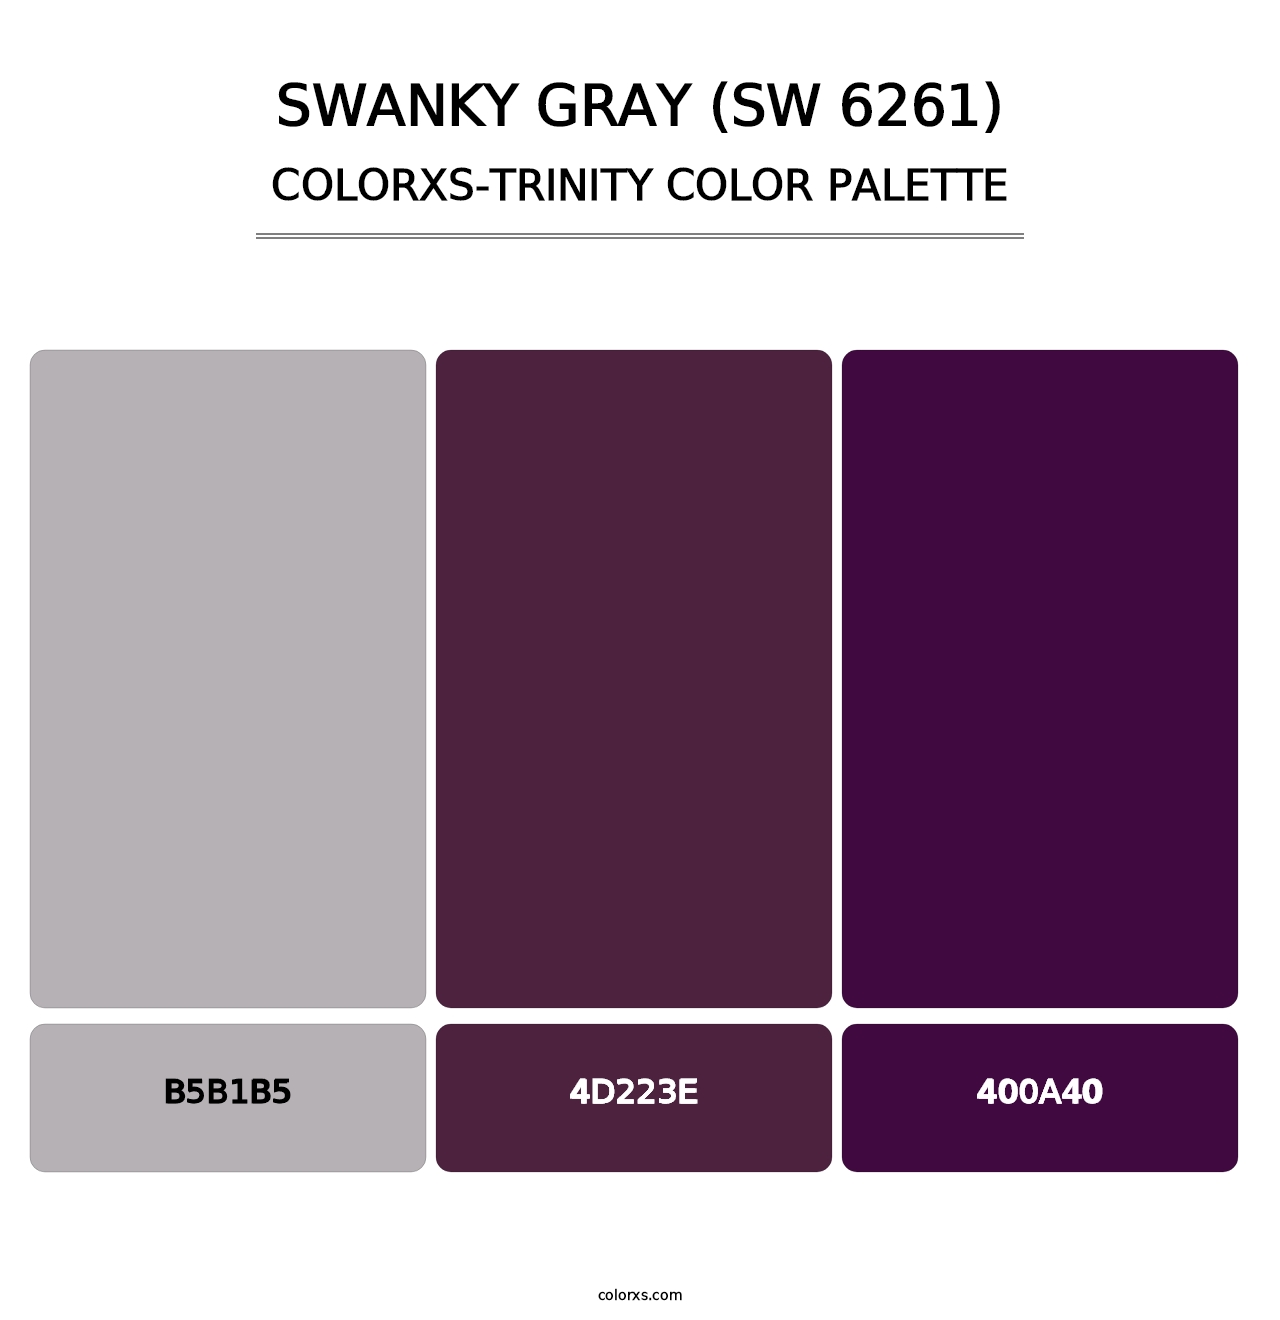 Swanky Gray (SW 6261) - Colorxs Trinity Palette